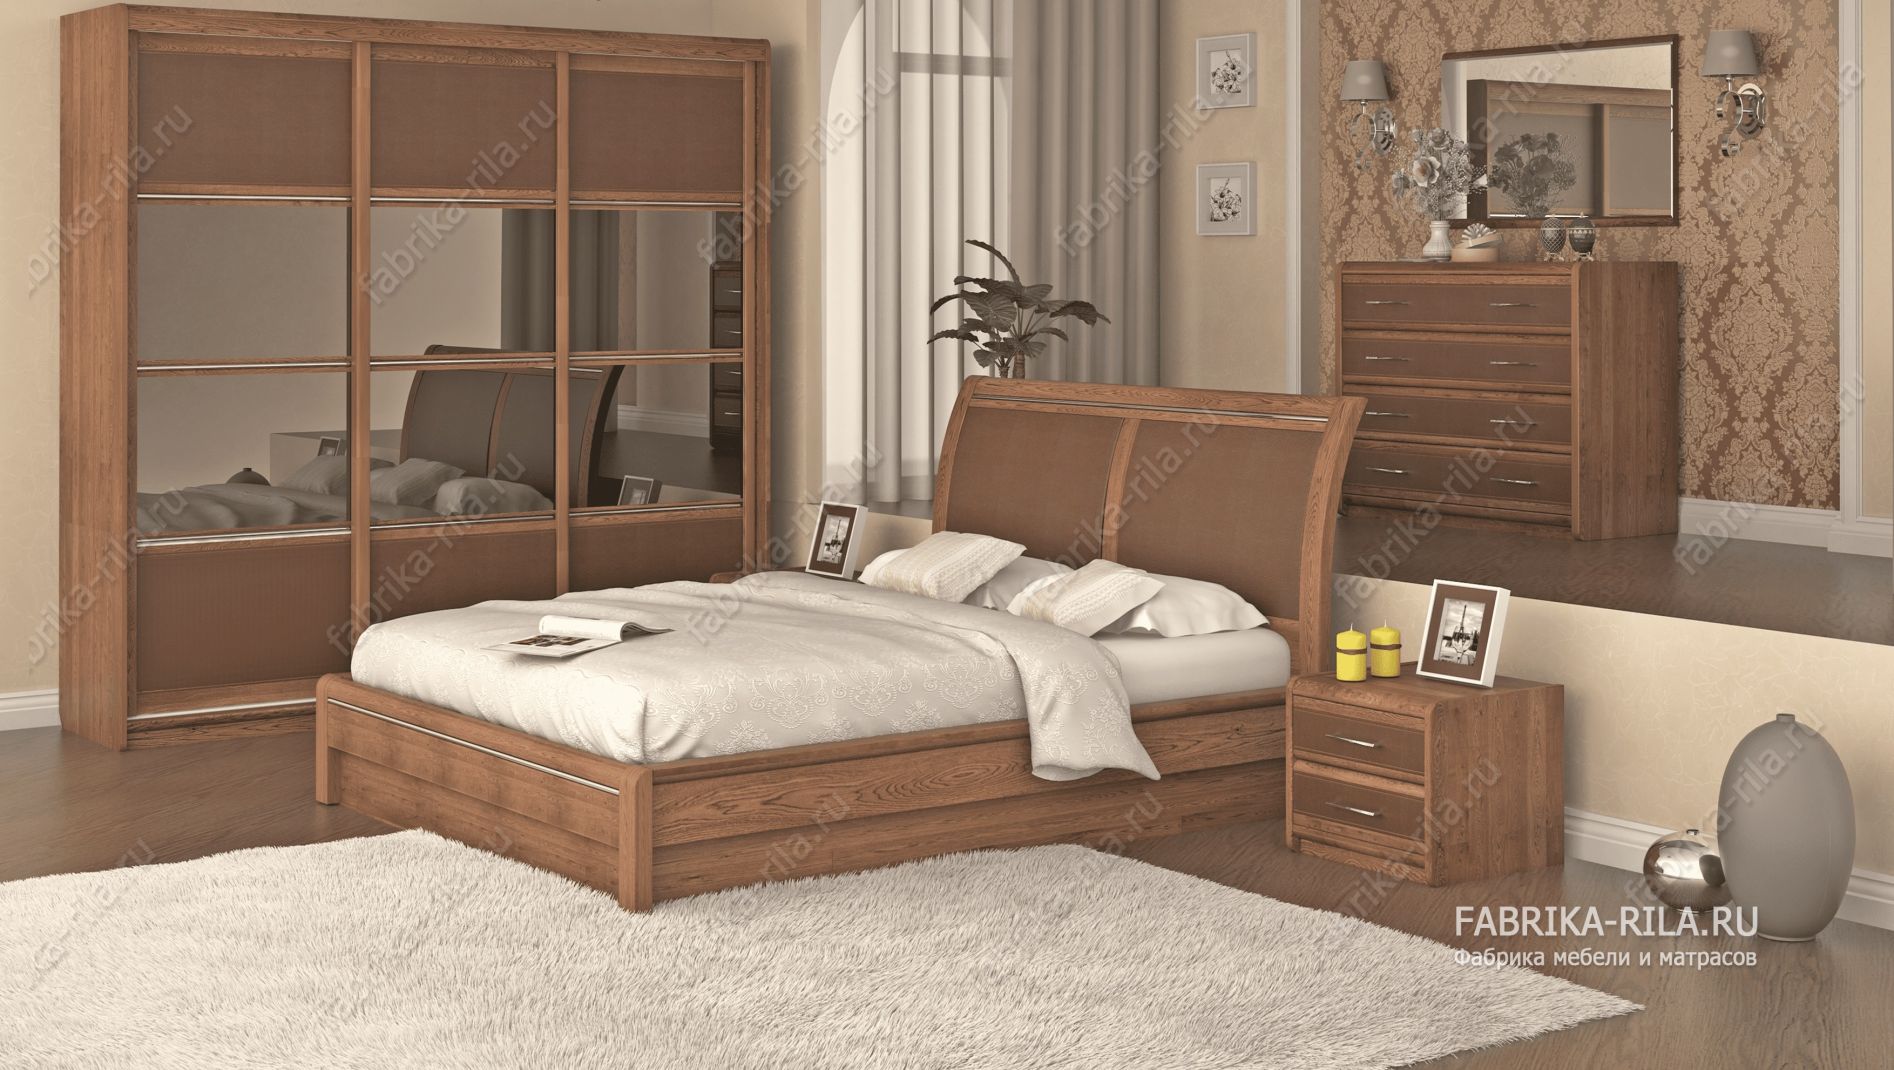 кровать Okaeri 6 см— 90x190 см. из бука